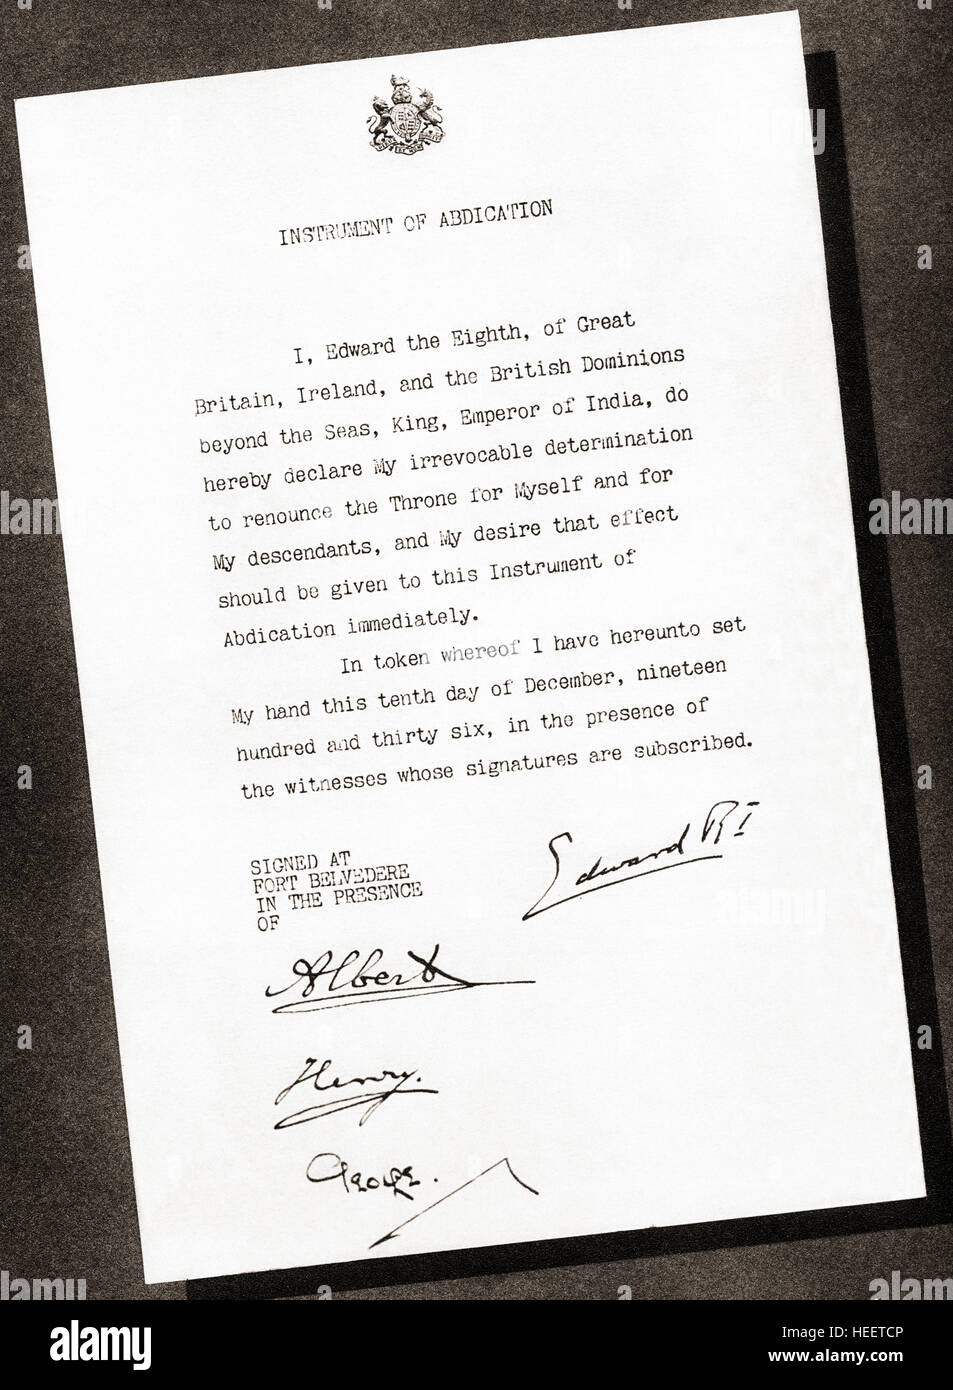 Strumento di abdicazione firmato nel 1936 dal re Edoardo VIII e i suoi tre fratelli, Prince Albert futuro George VI, il principe Henry, duca di Gloucester e Prince George, Duca di Kent. Foto Stock